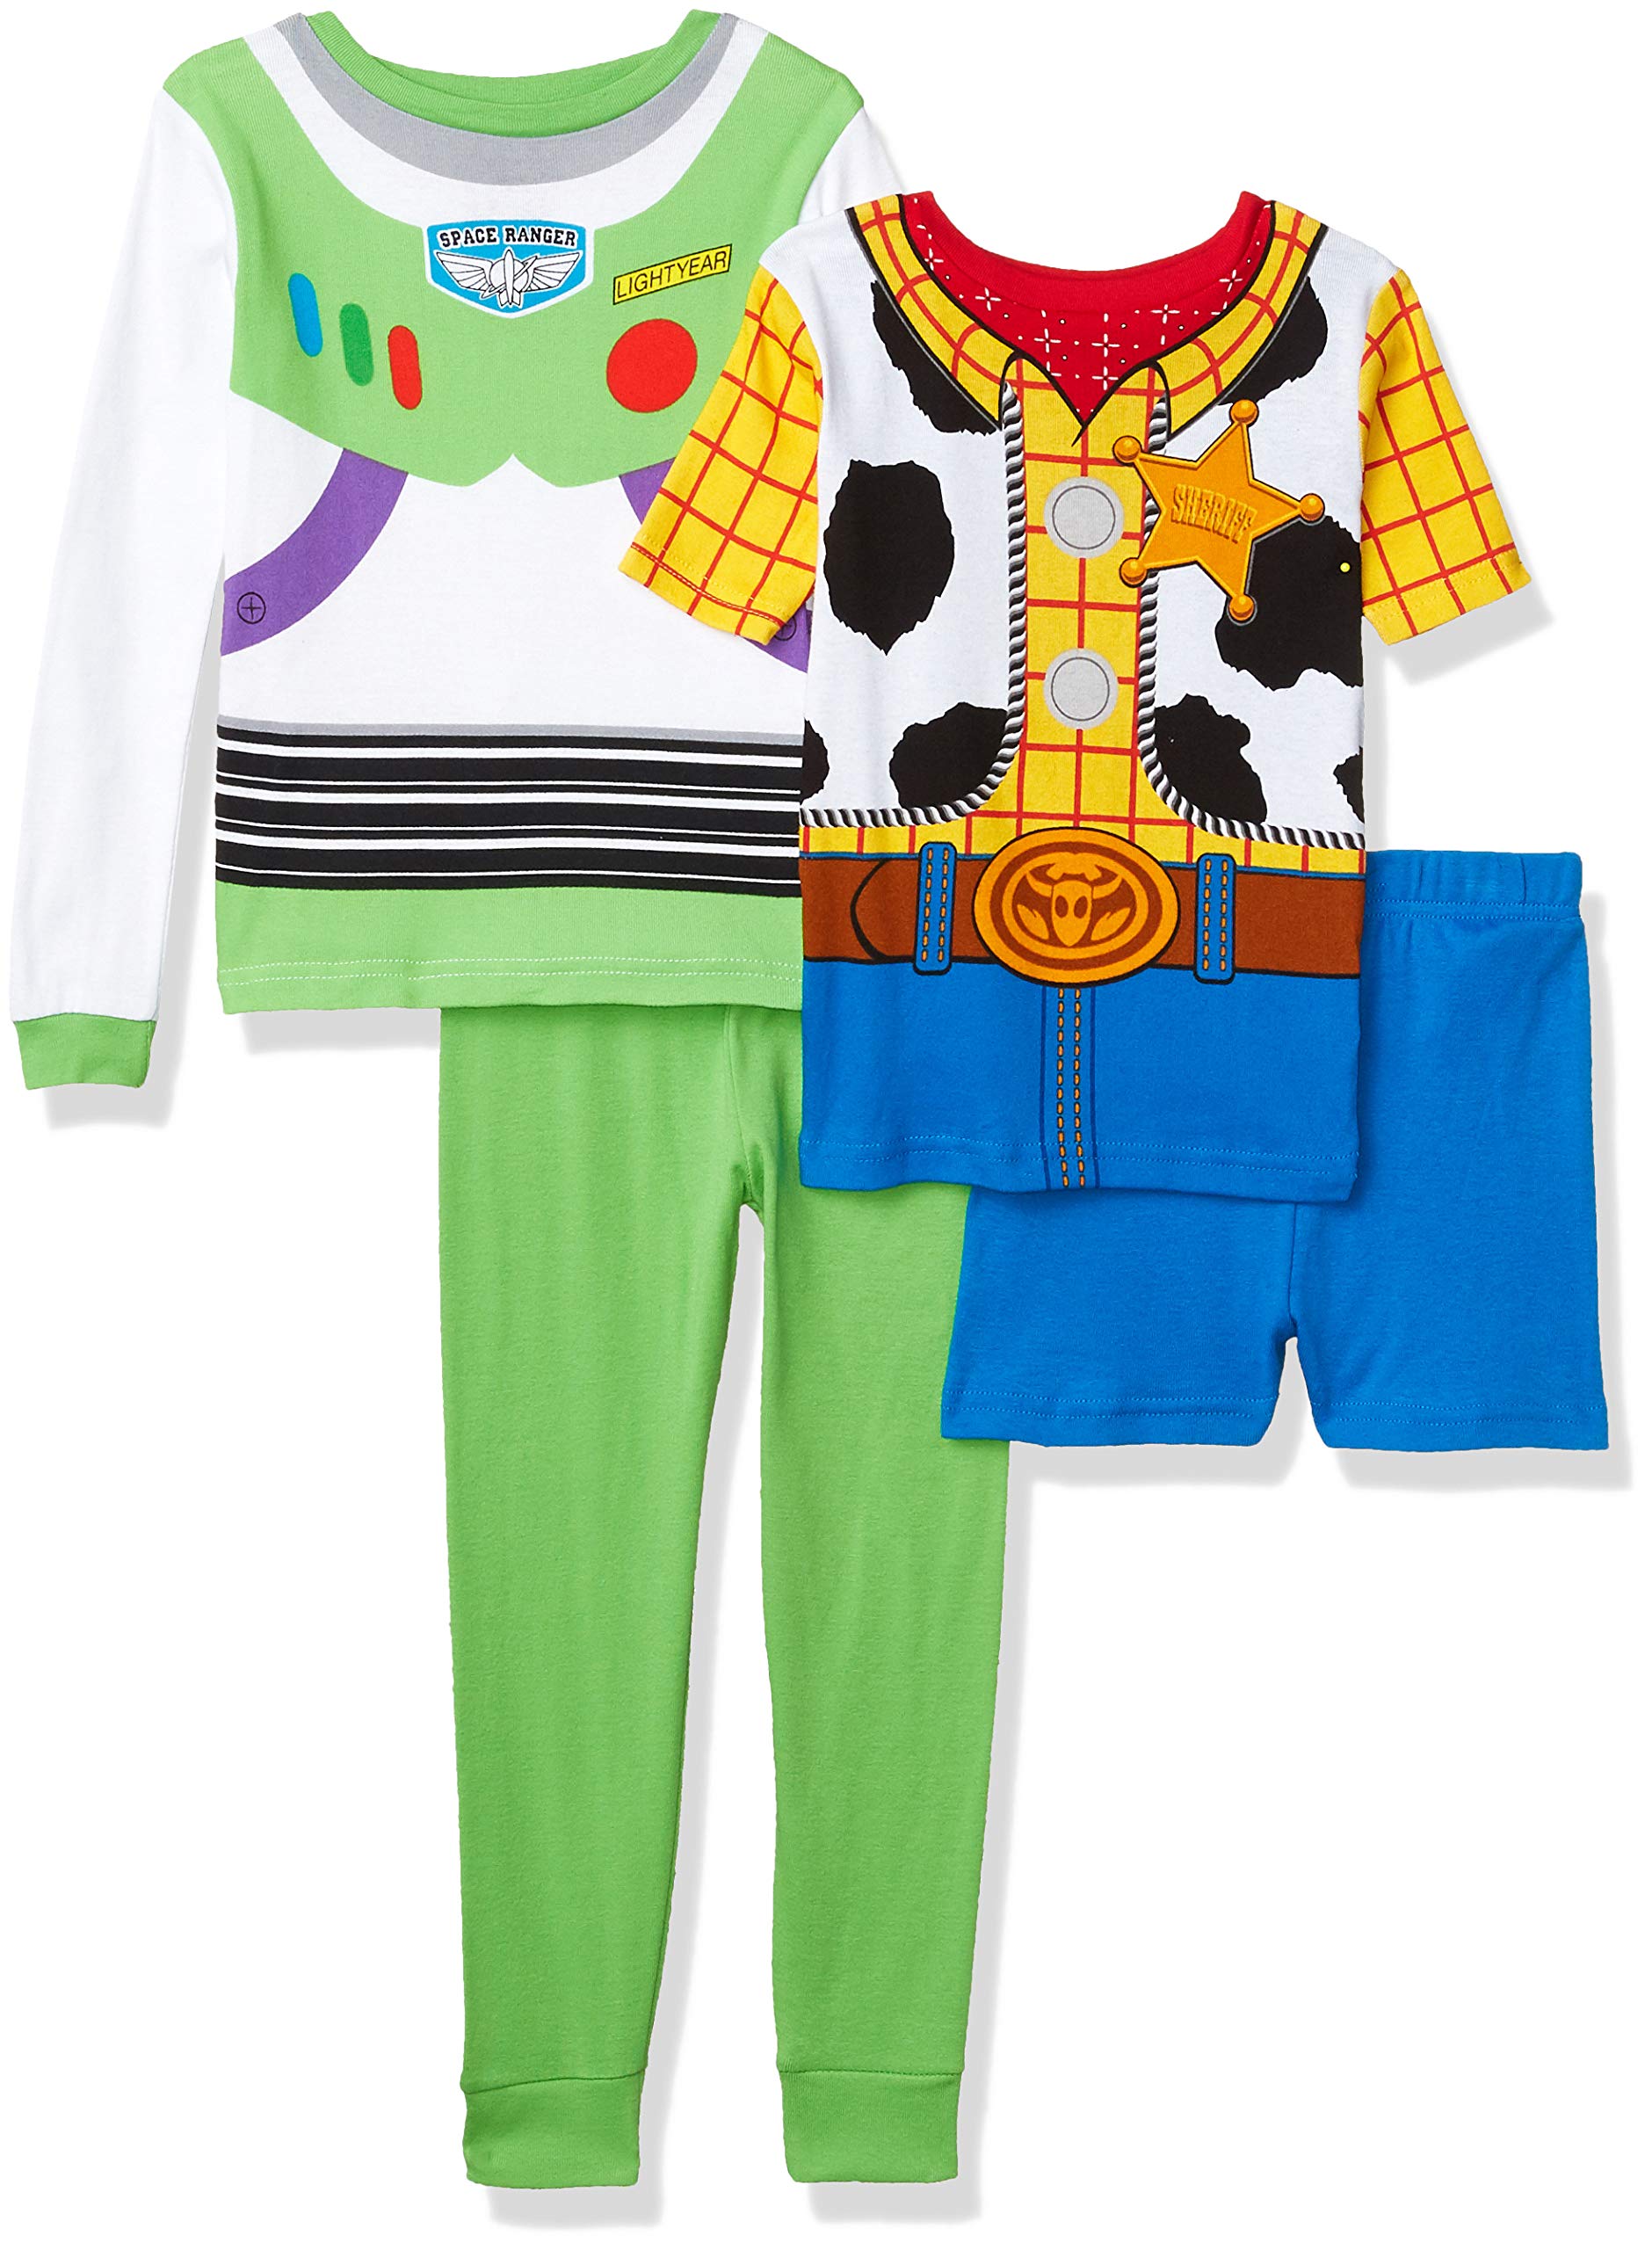 Disney Boys' Toy Story Snug Fit Cotton Pajamas